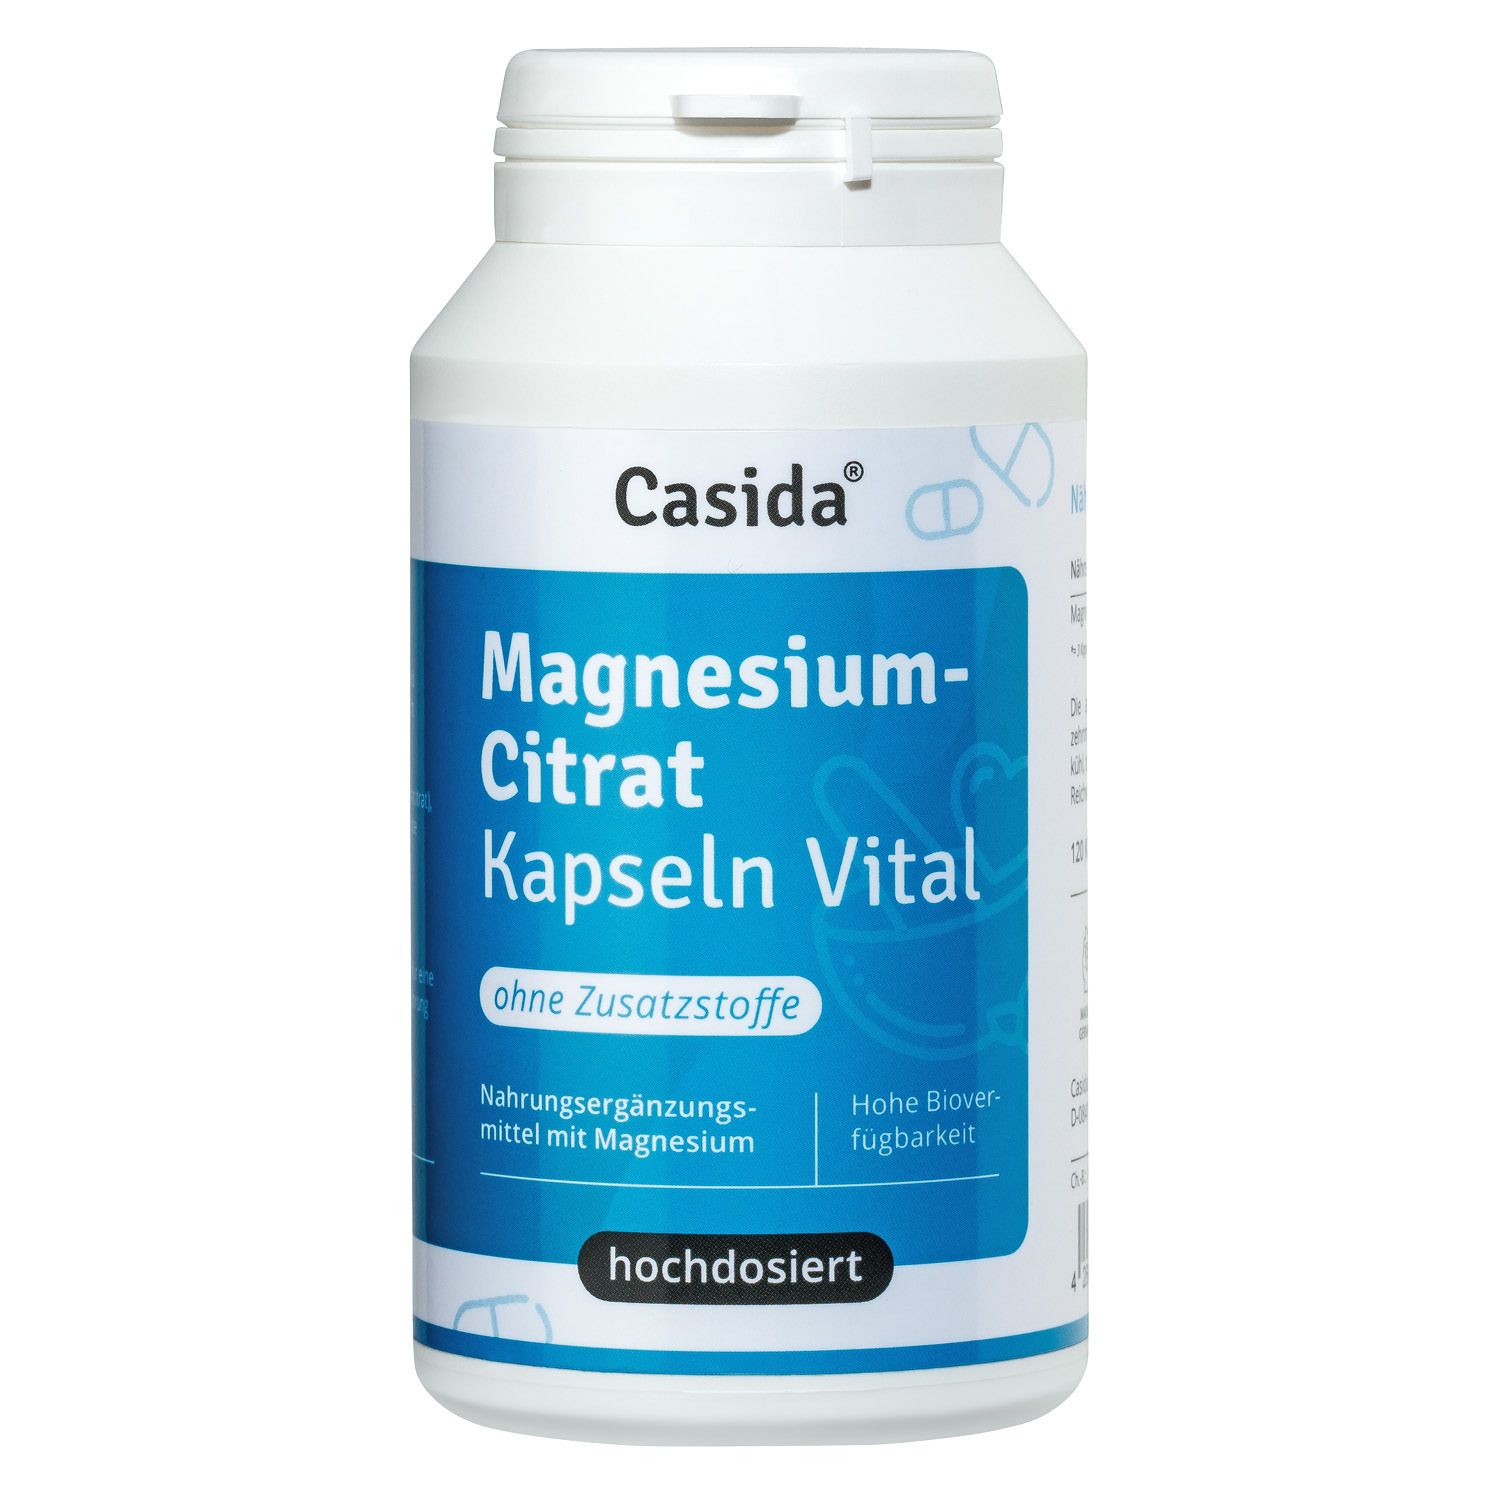 Image of Casida® Magnesiumcitrat Kapseln Vital